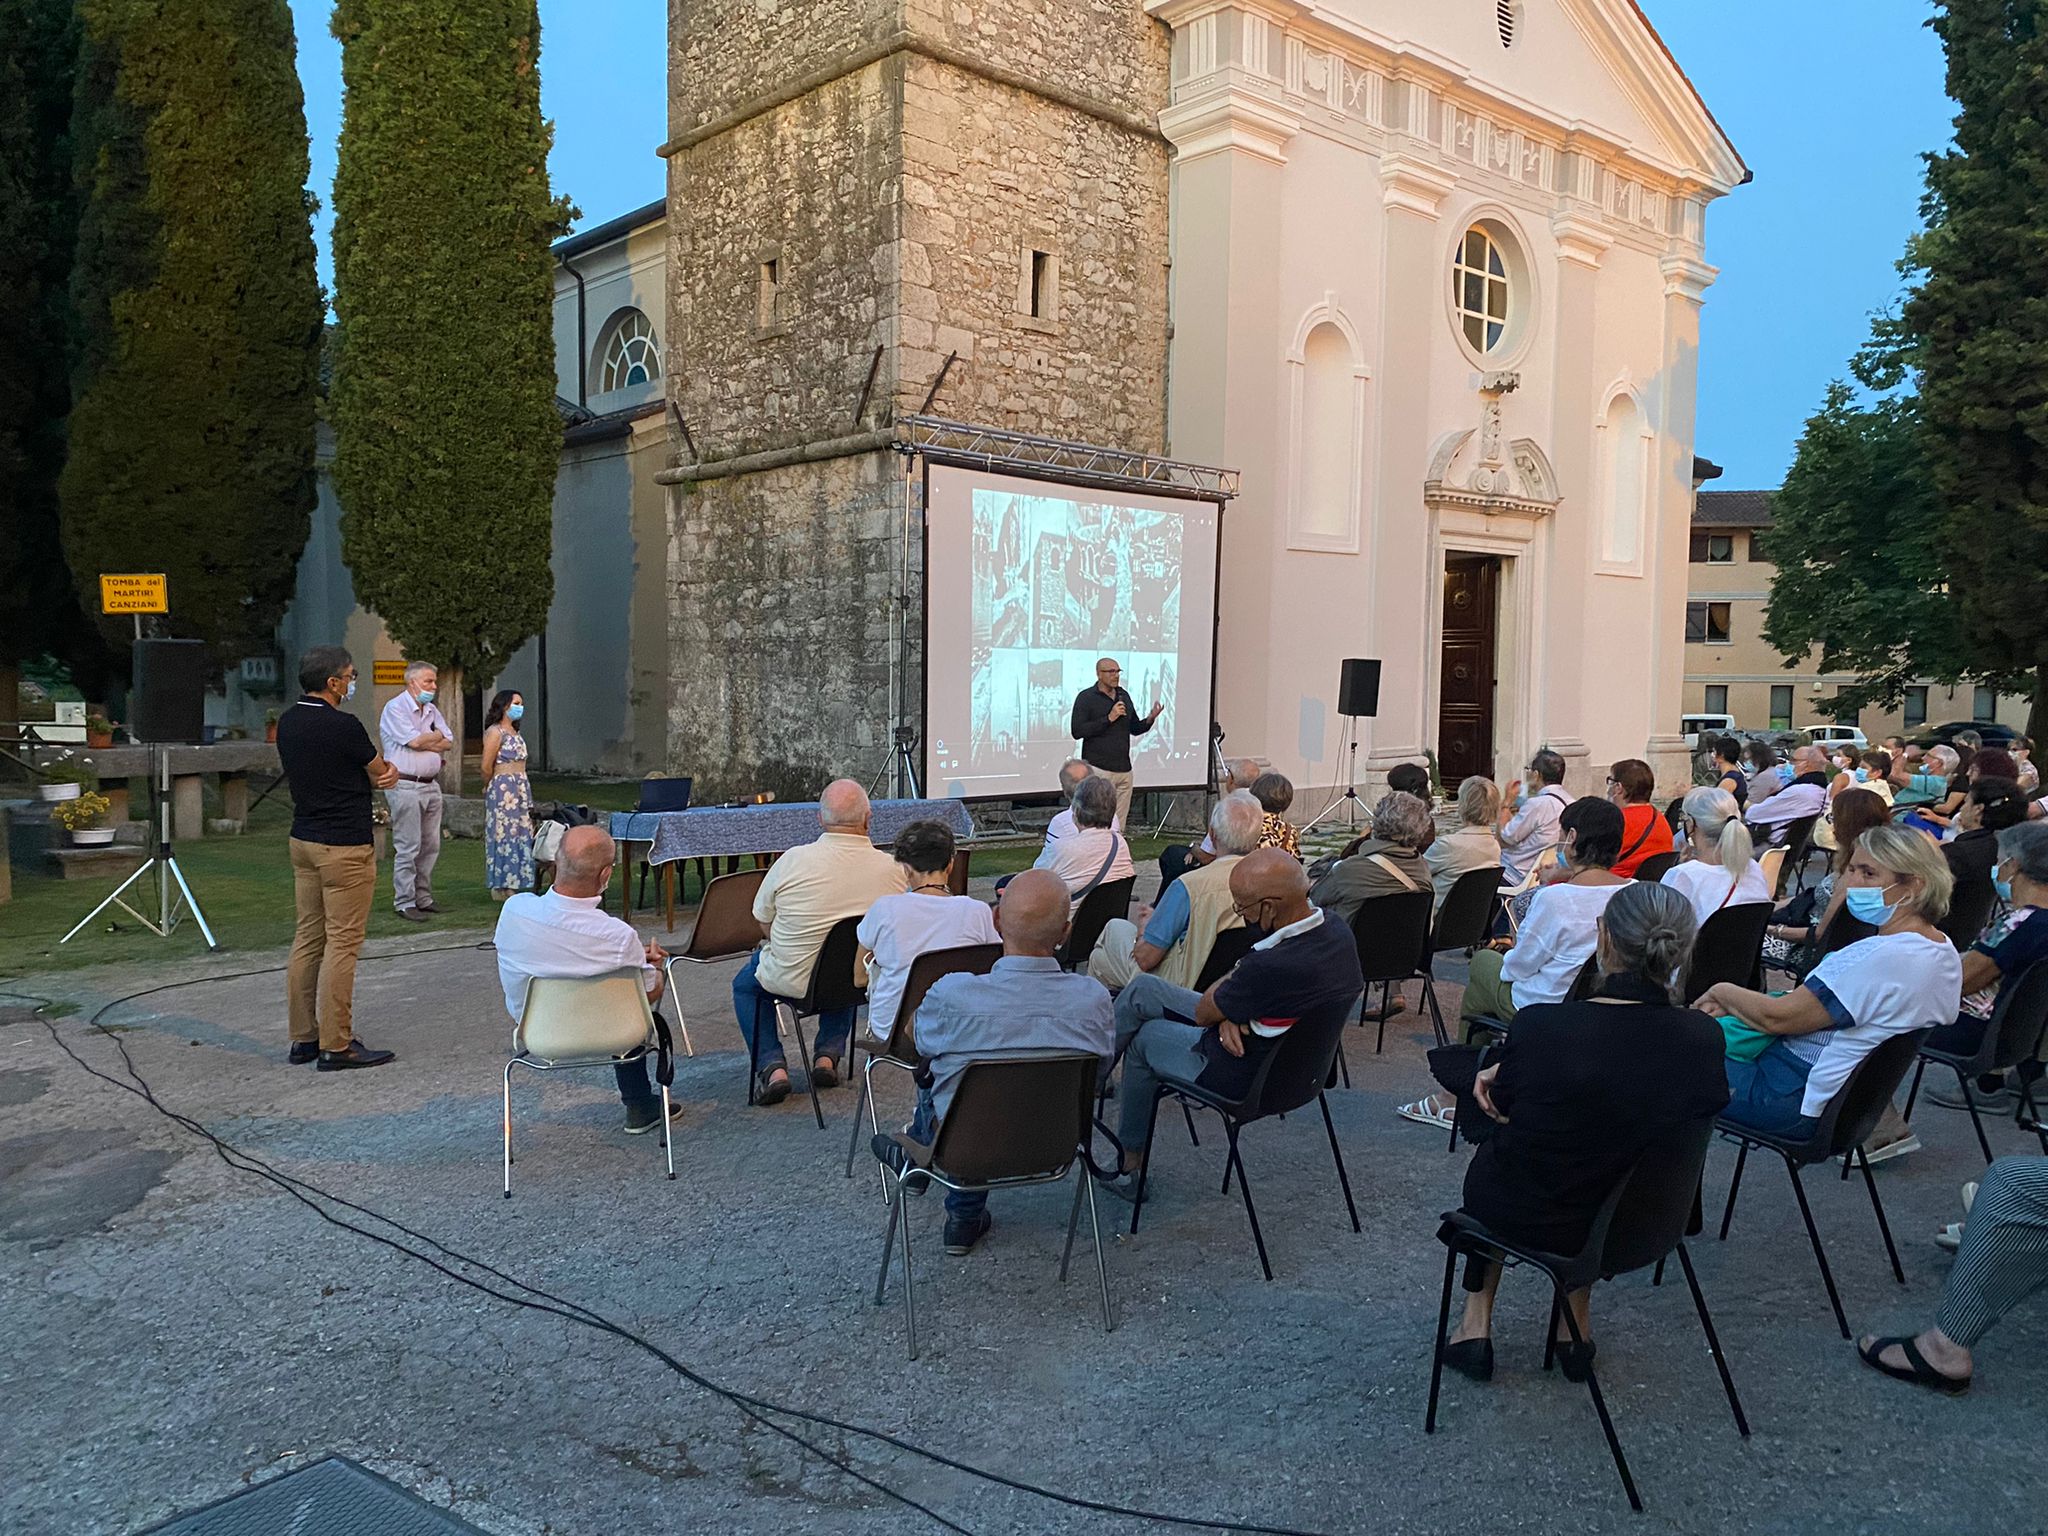 Le analisi scrivono la storia di San Canzian d'Isonzo, ora si guarda alla villa romana